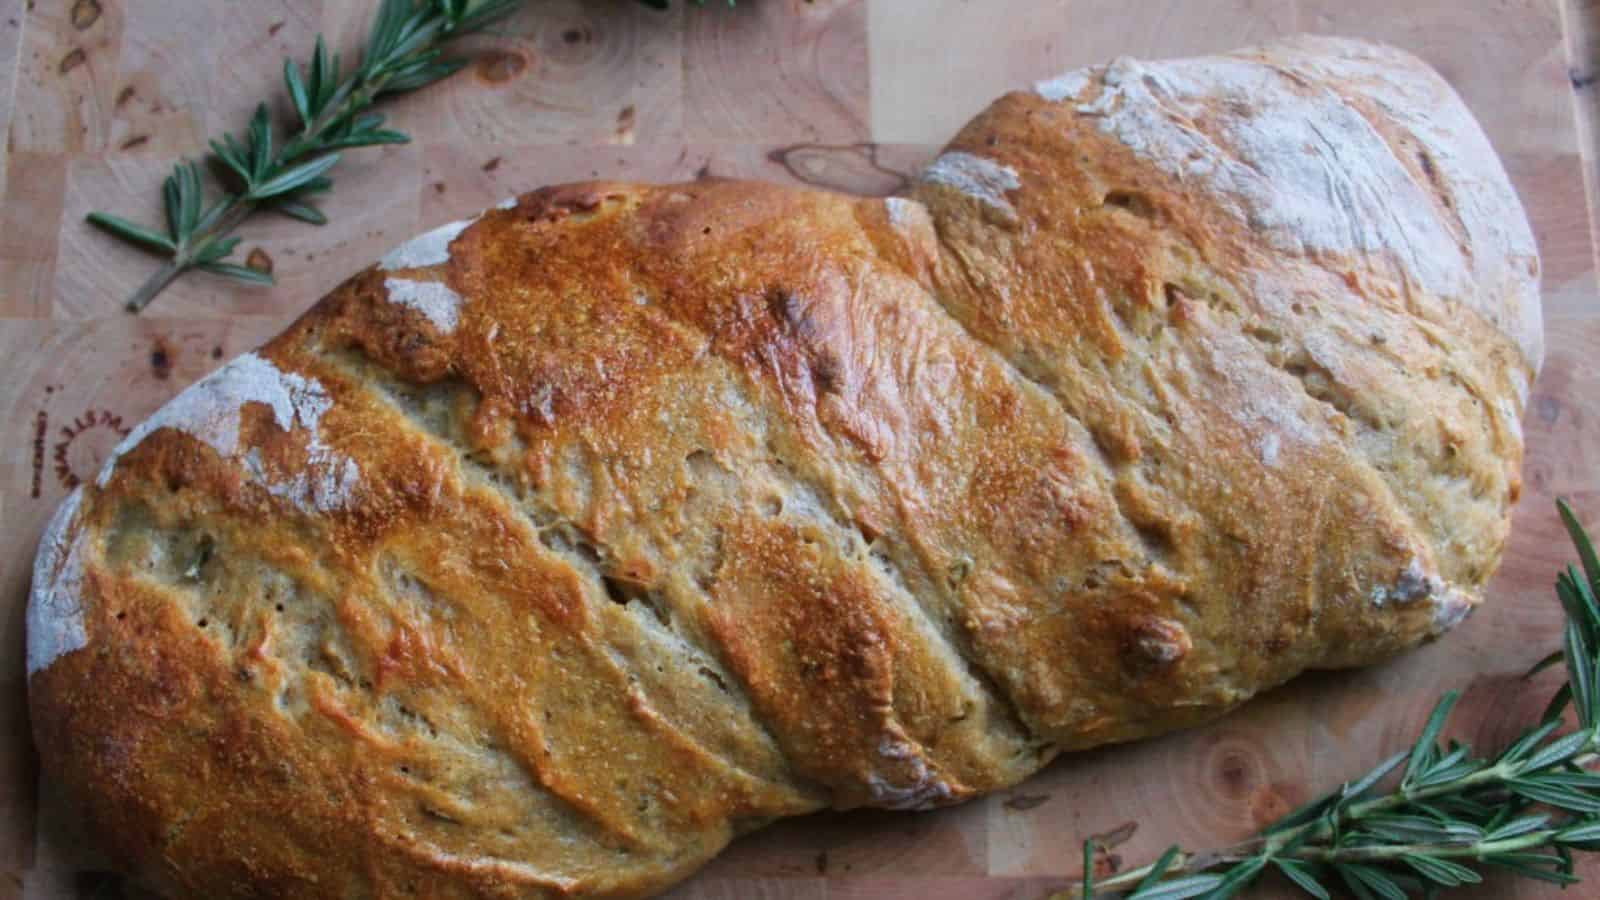 Rosemary sourdough bread on cutting board.